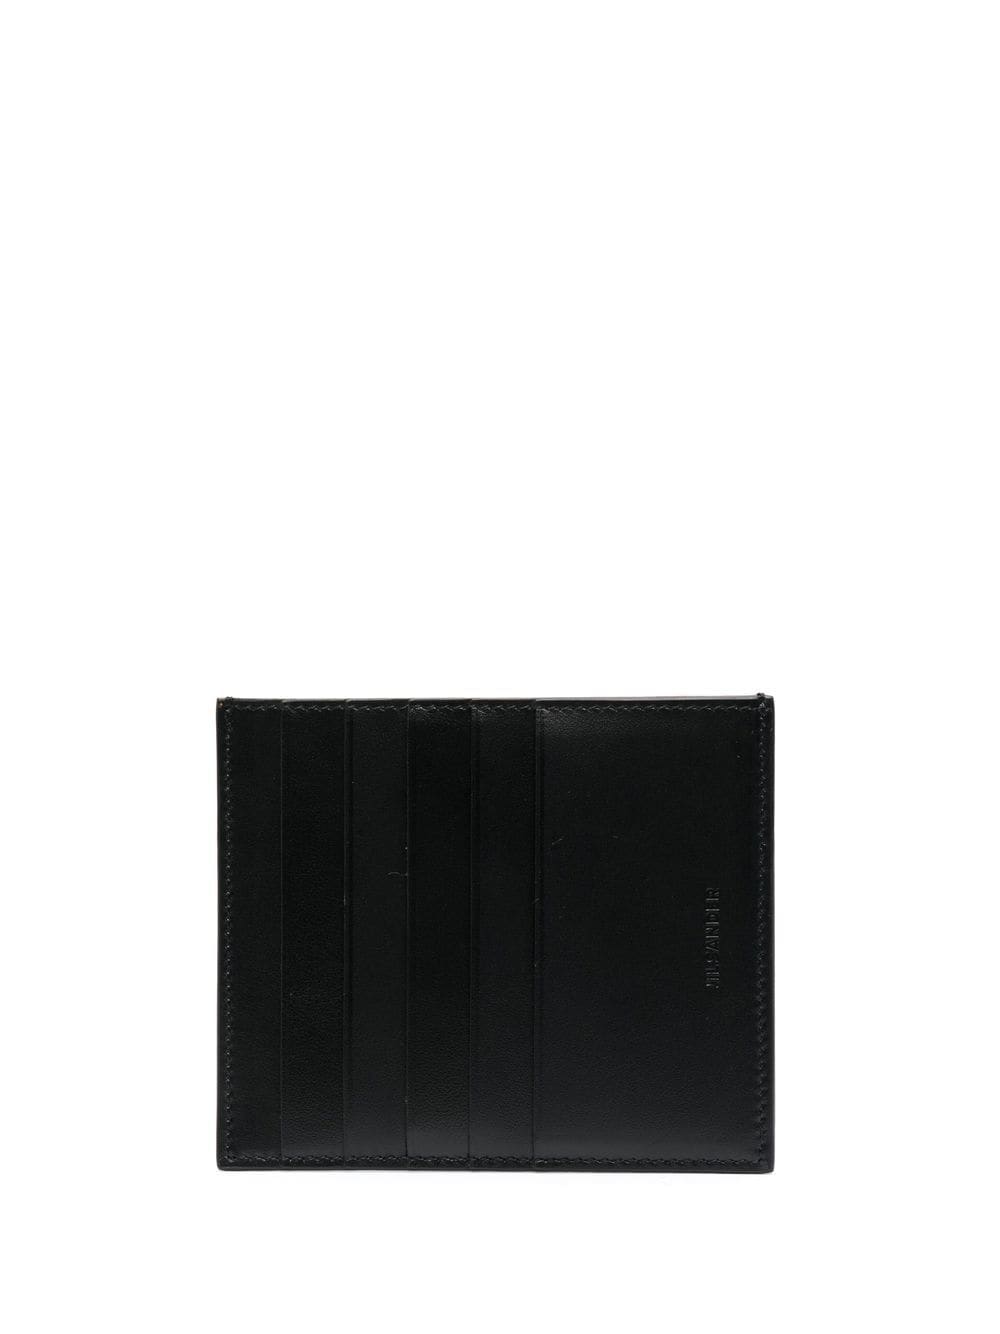 Jil Sander leather card holder - Black von Jil Sander